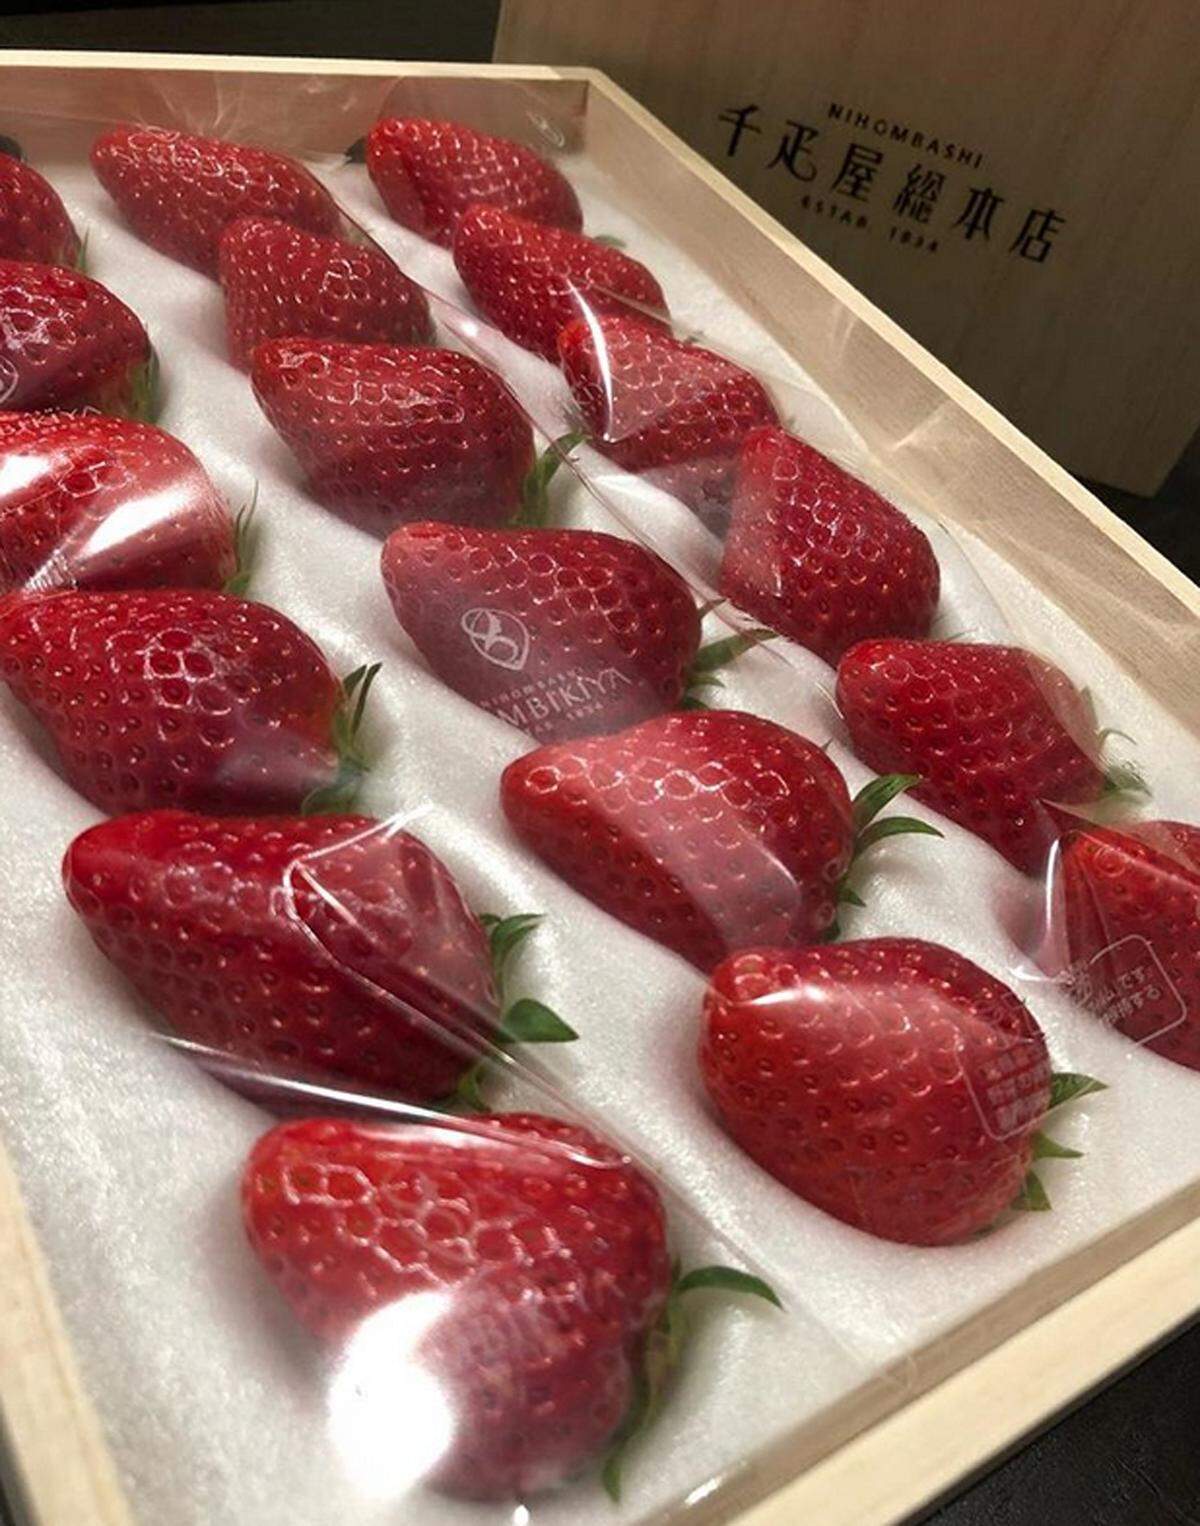 12 perfekte Sembikiya Queen Erdbeeren werden in einer Packung um 85 US-Dollar verkauft. Nur perfekt geformte Früchte kommen in das Kisterl.